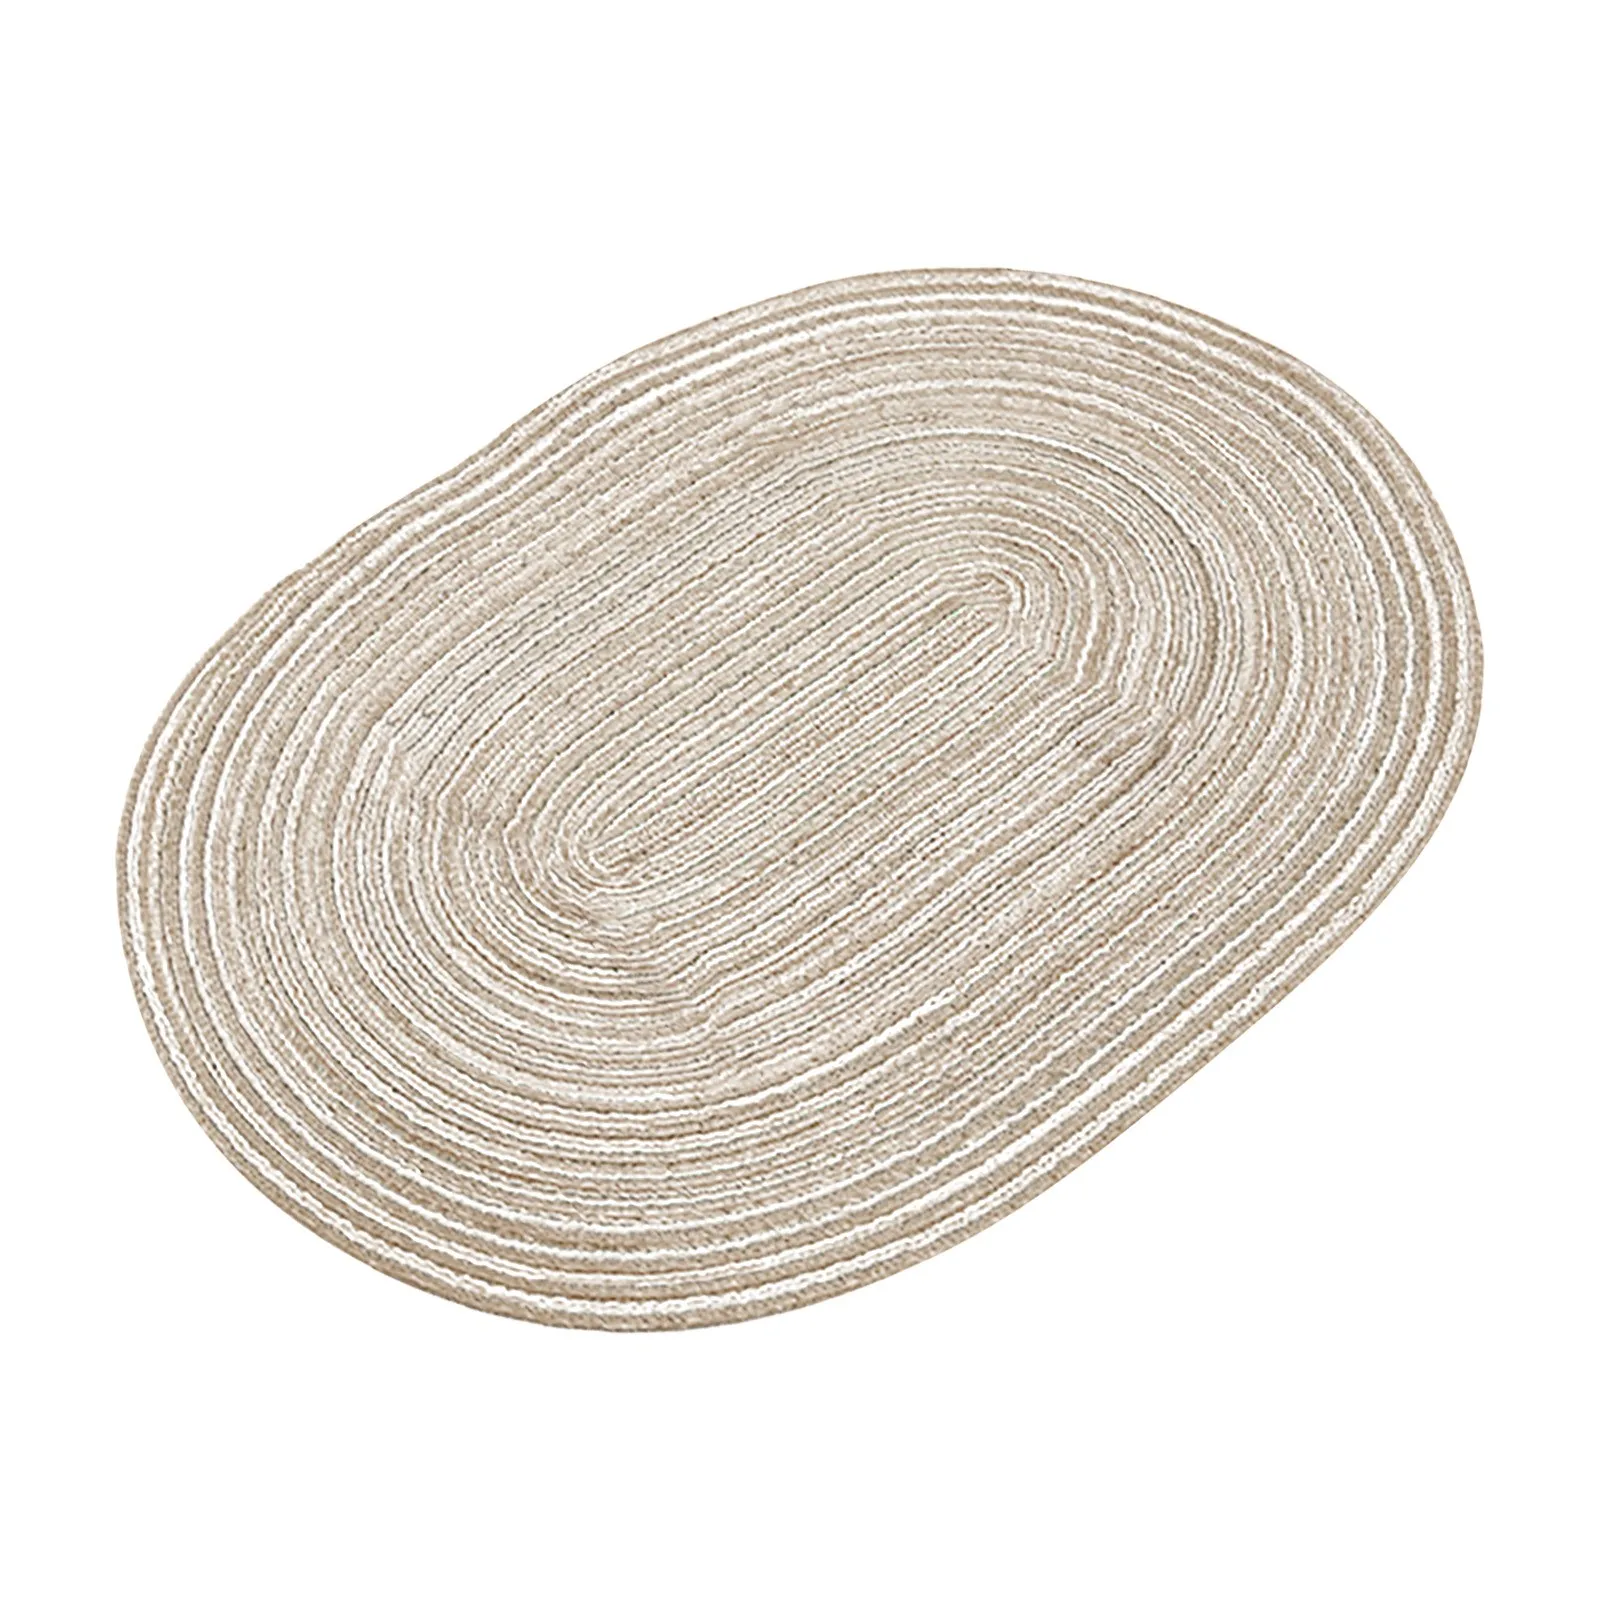 Fios de algodão Oval guardanapo de papel Japonês isolamento Calor Pote Tapete de Casa de Mão de Tecidos Decorativos Tapete de Cunhas de Madeira redonda